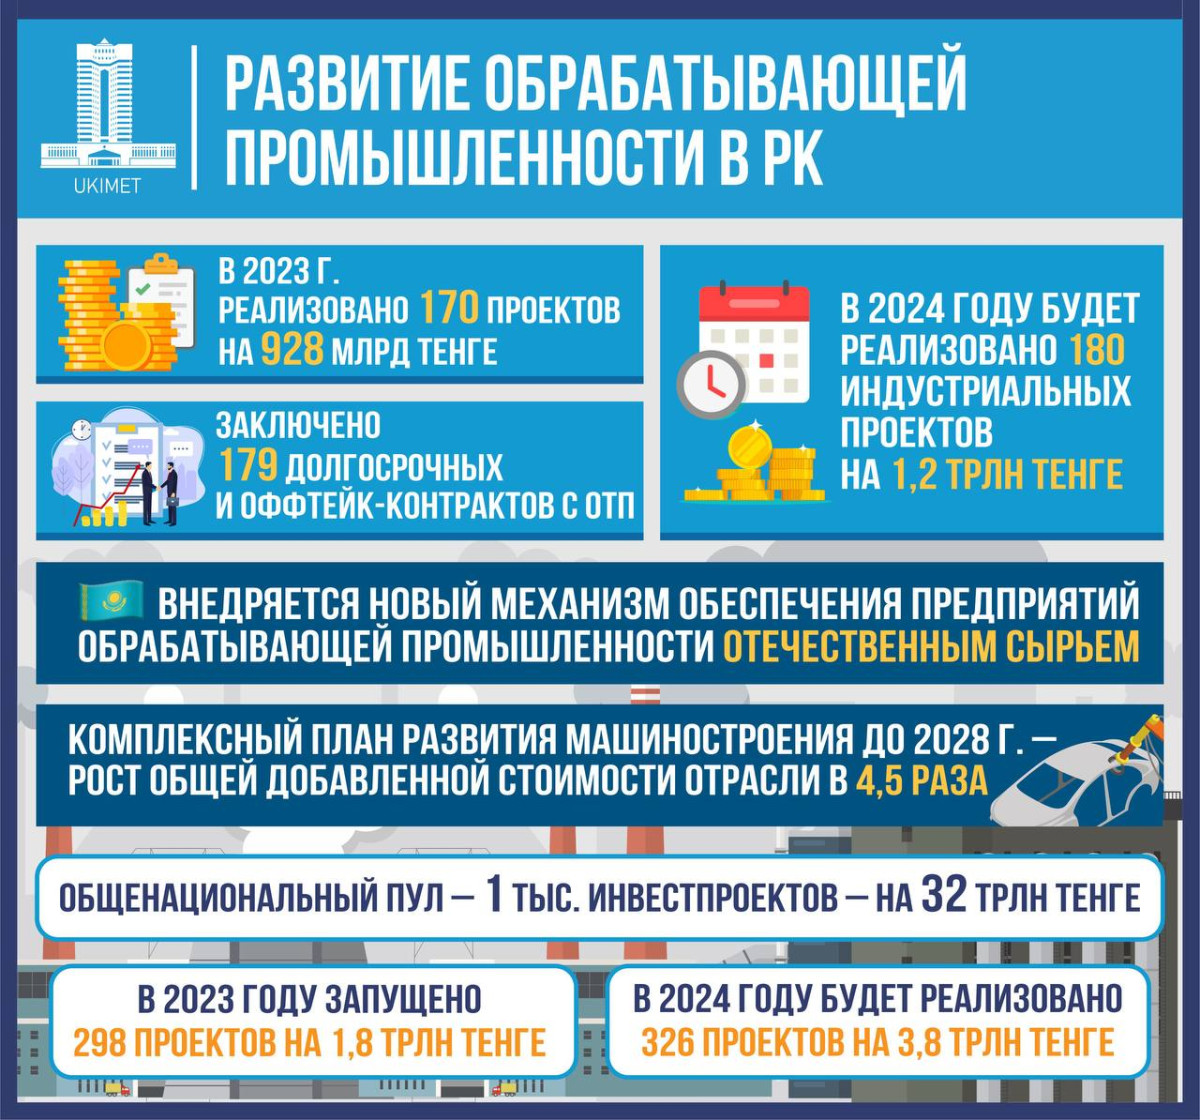 180 индустриальных проектов на 1,2 трлн тенге реализуют в Казахстане в этом году